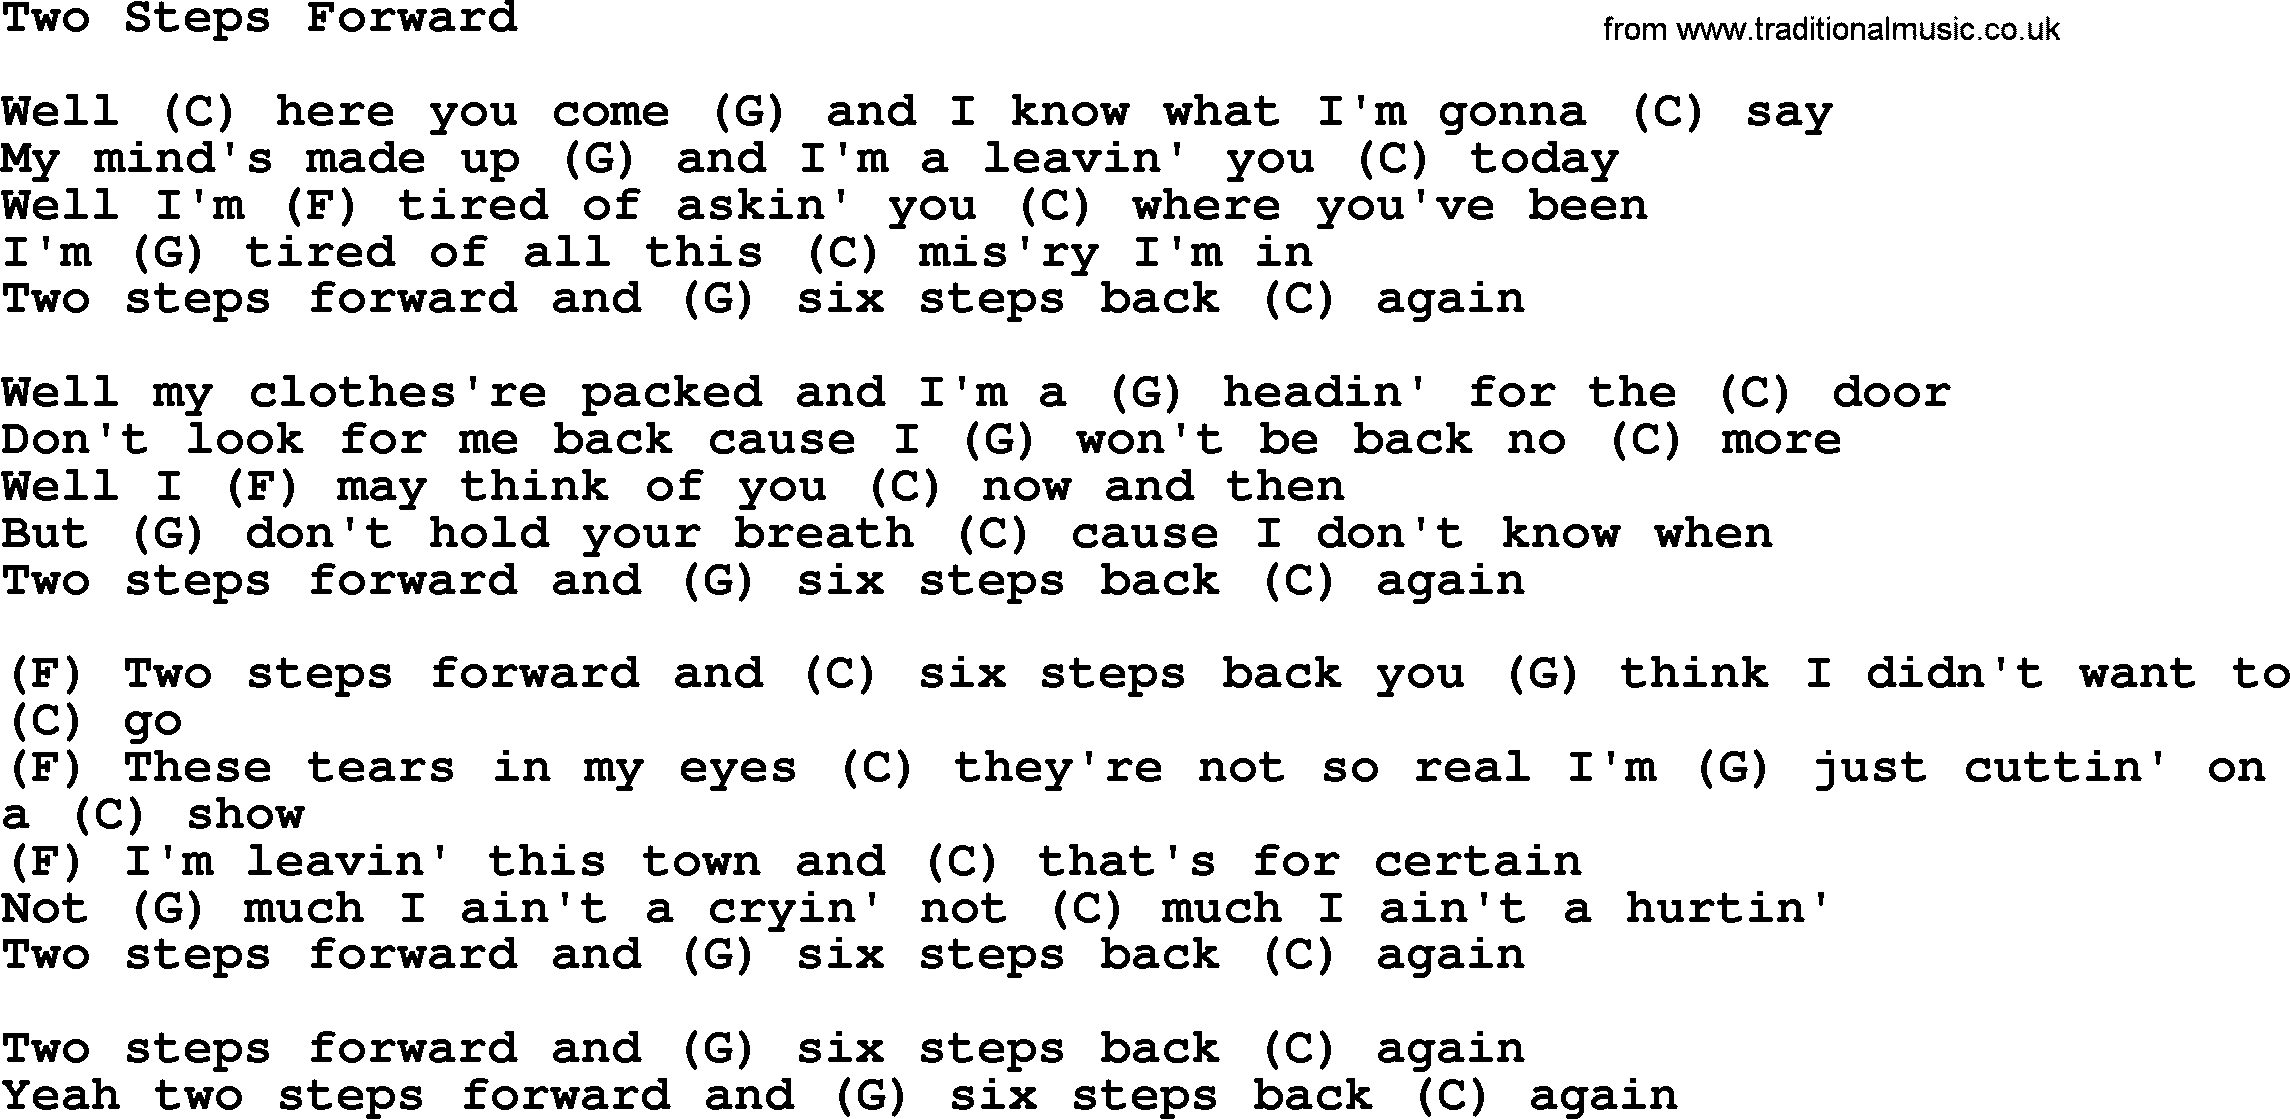 Loretta Lynn song: Two Steps Forward lyrics and chords